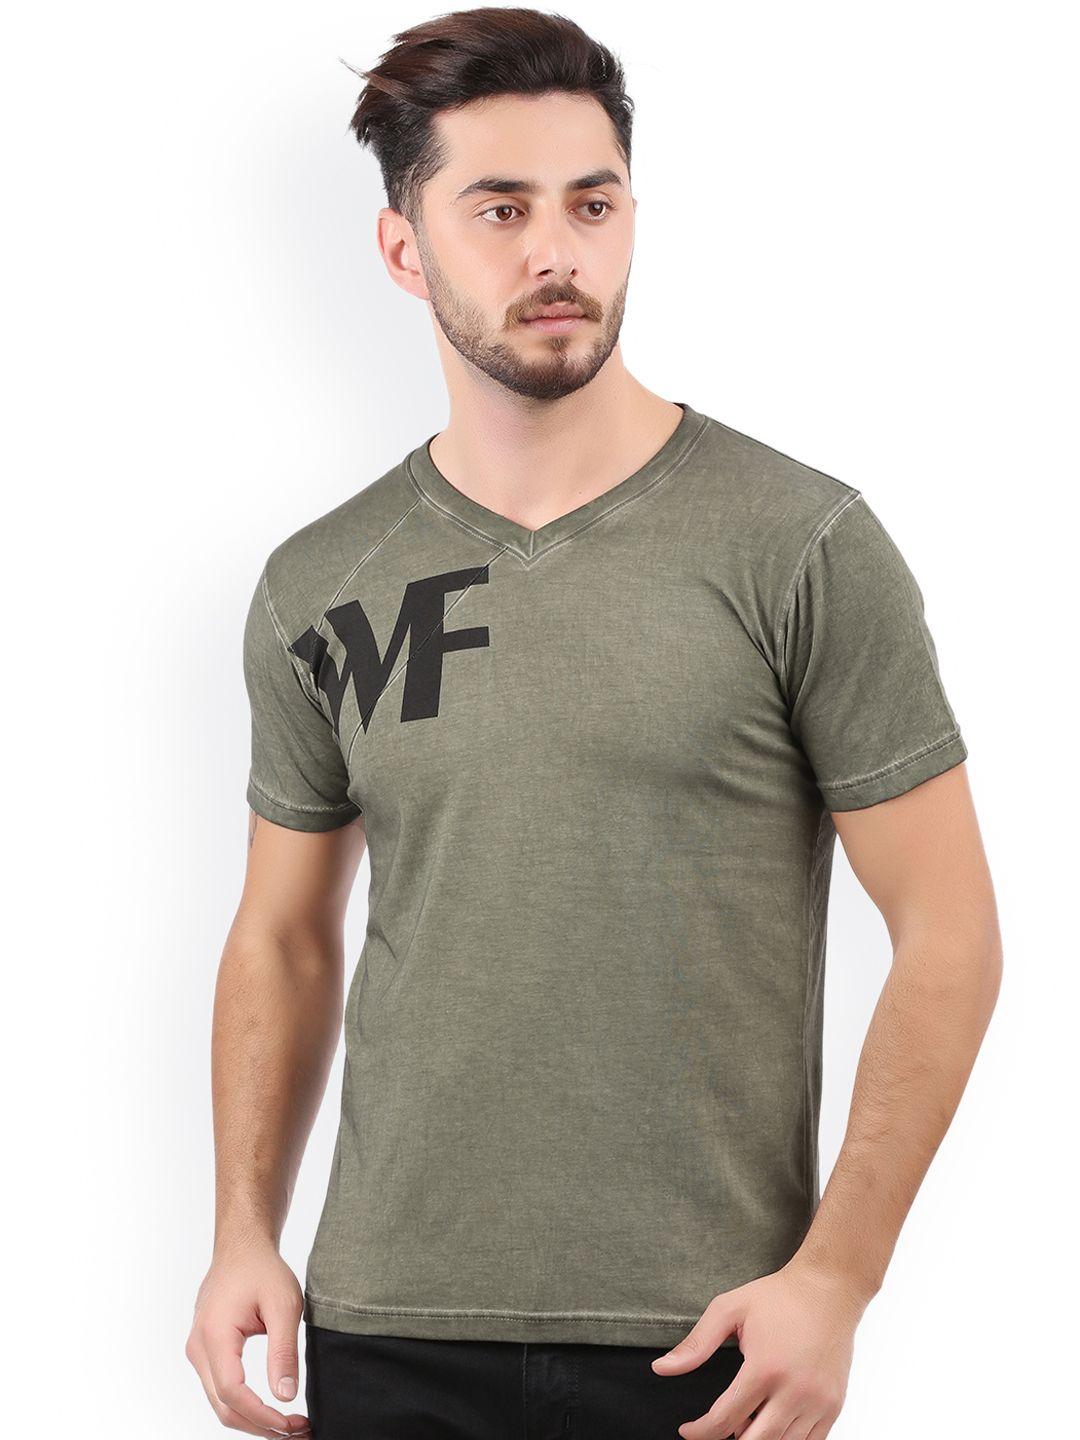 wexford men olive green printed v-neck t-shirt